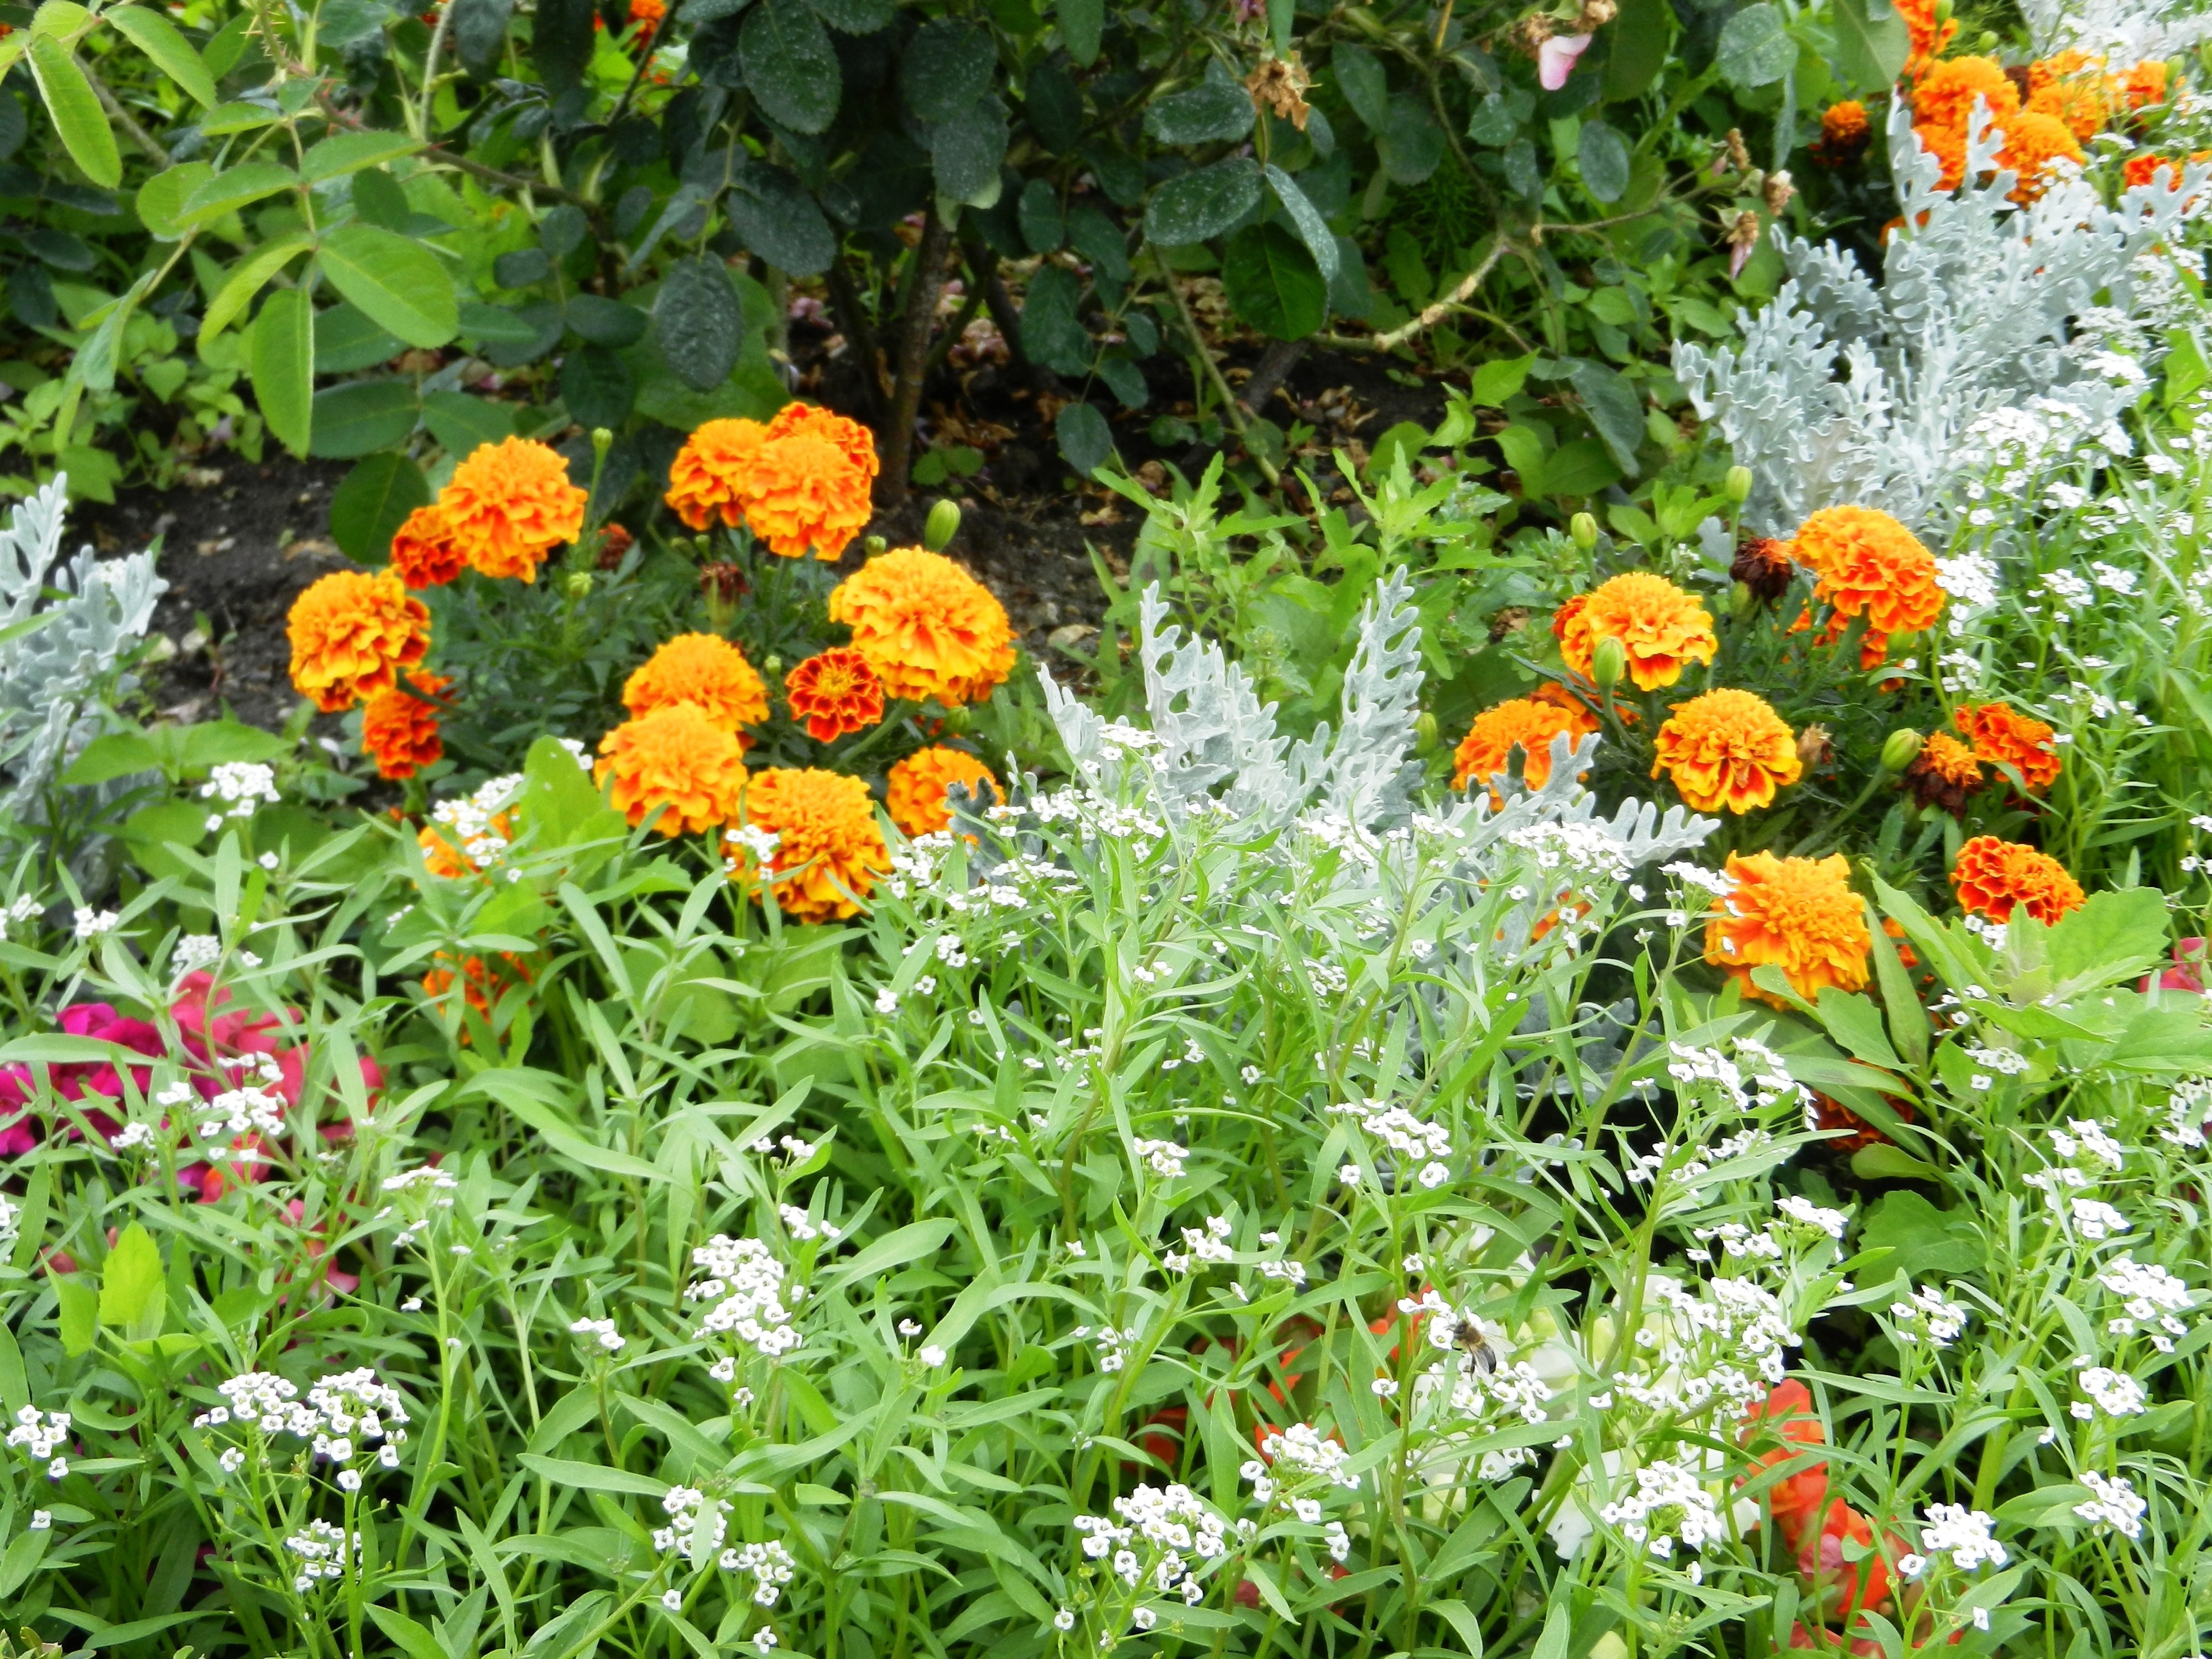 orange petaled flowers